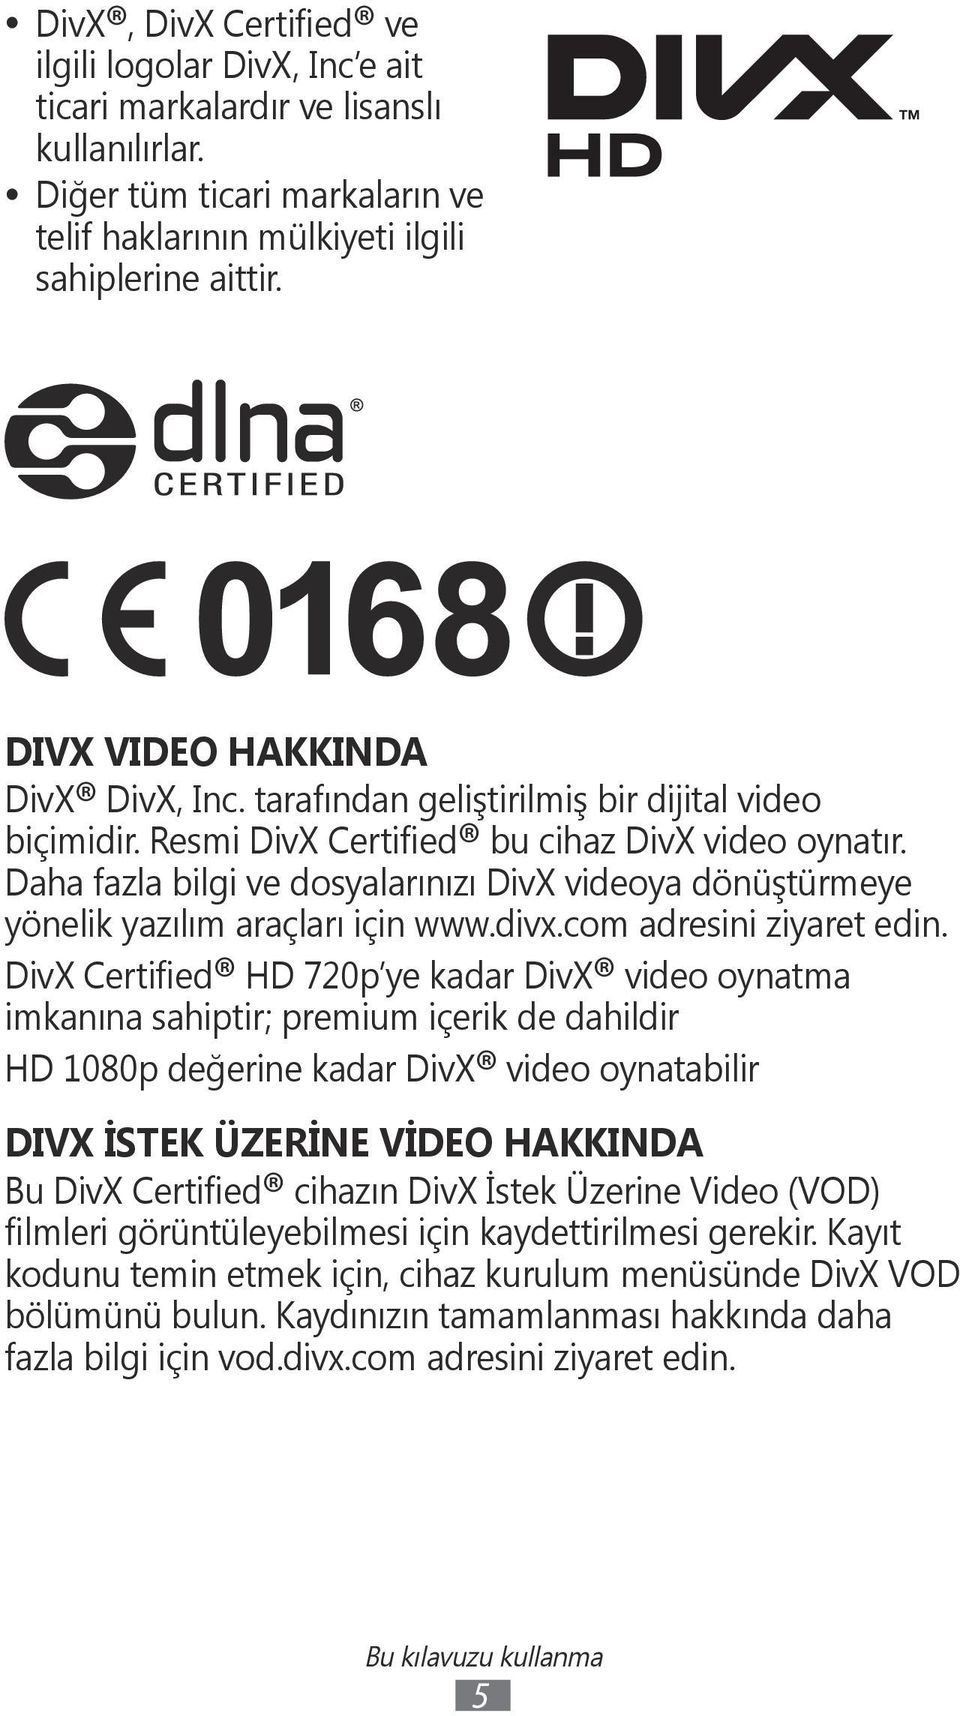 Daha fazla bilgi ve dosyalarınızı DivX videoya dönüştürmeye yönelik yazılım araçları için www.divx.com adresini ziyaret edin.